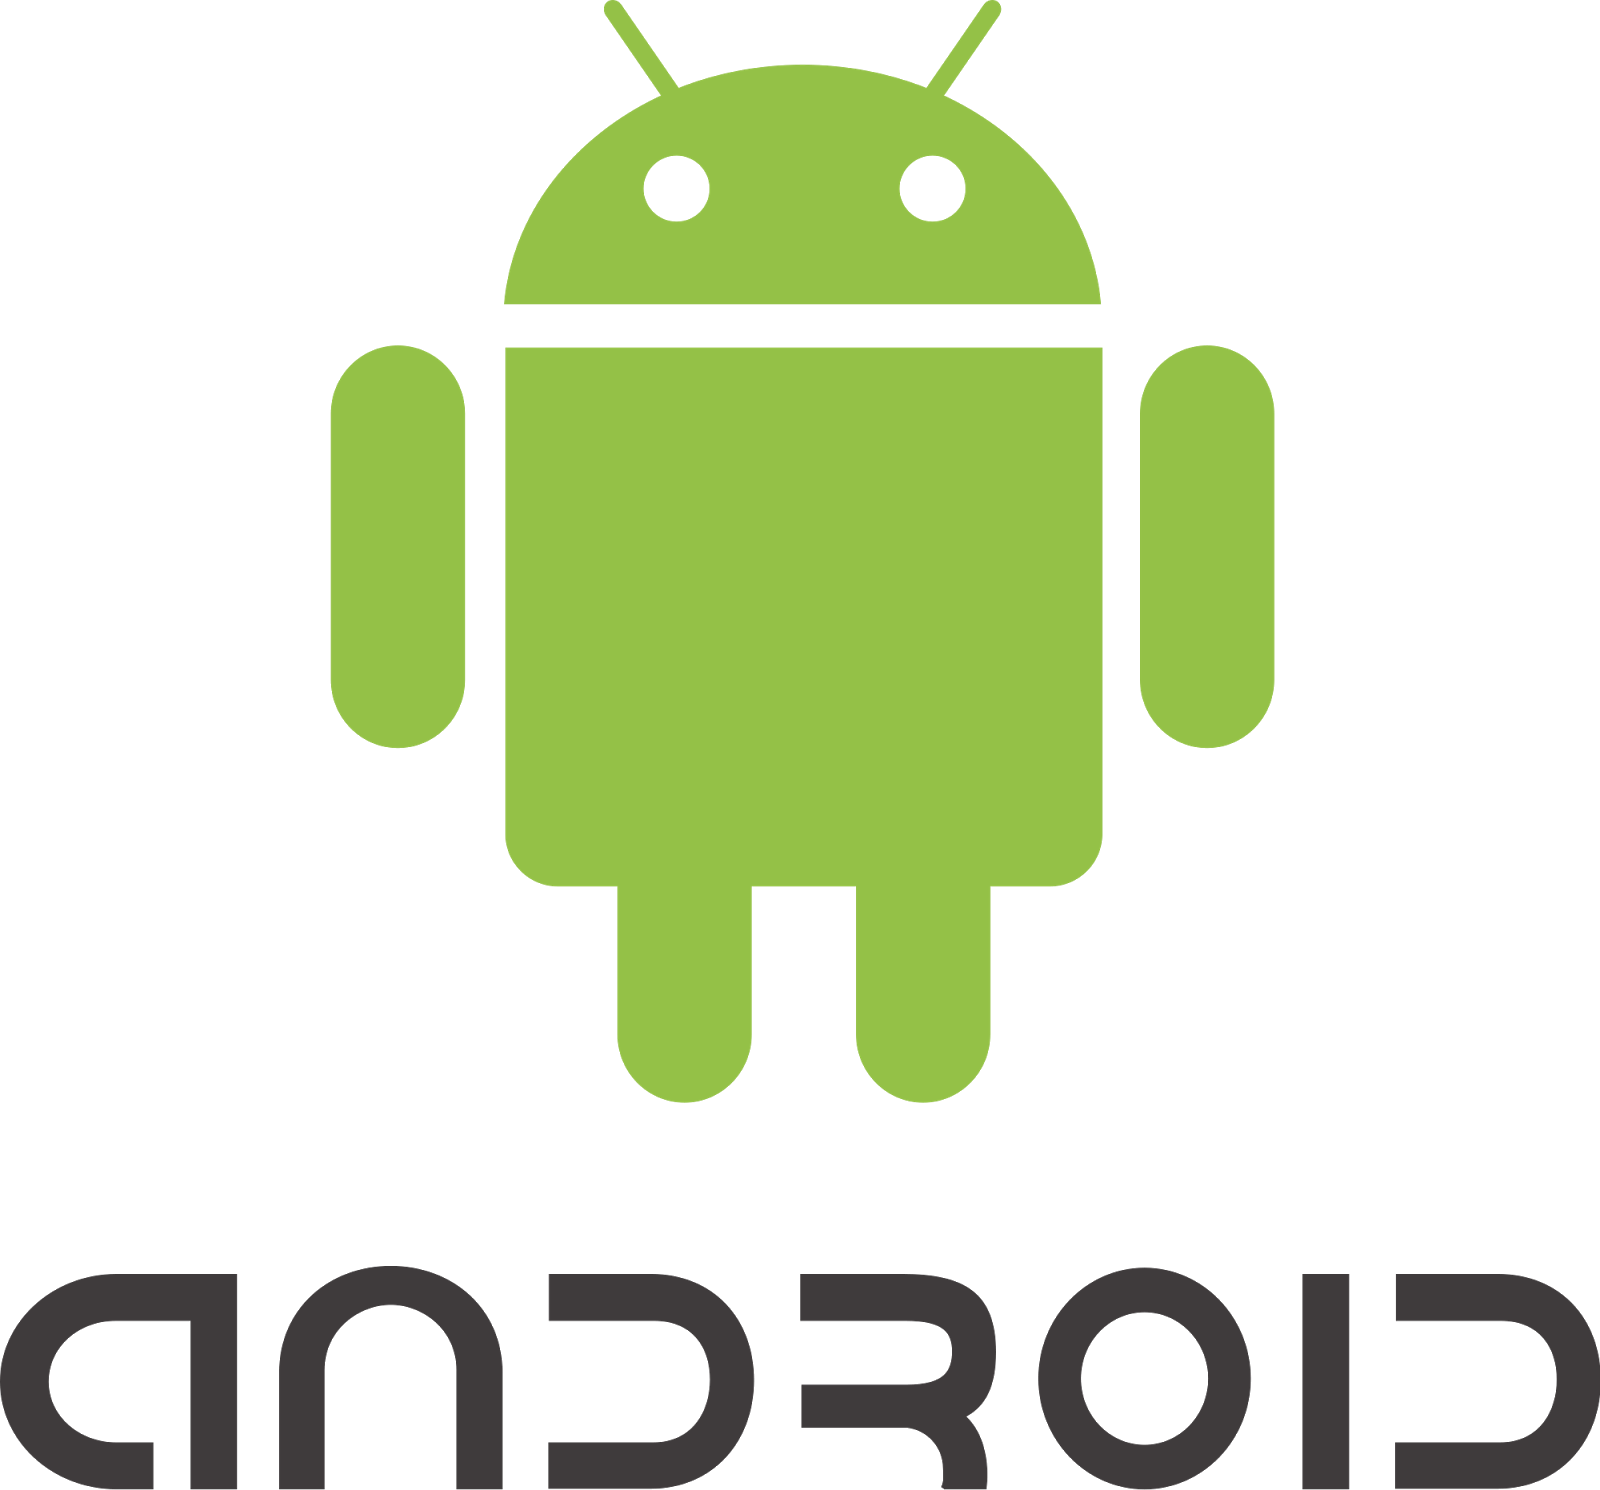 Sejarah Sistem Operasi Android | Klik-Android